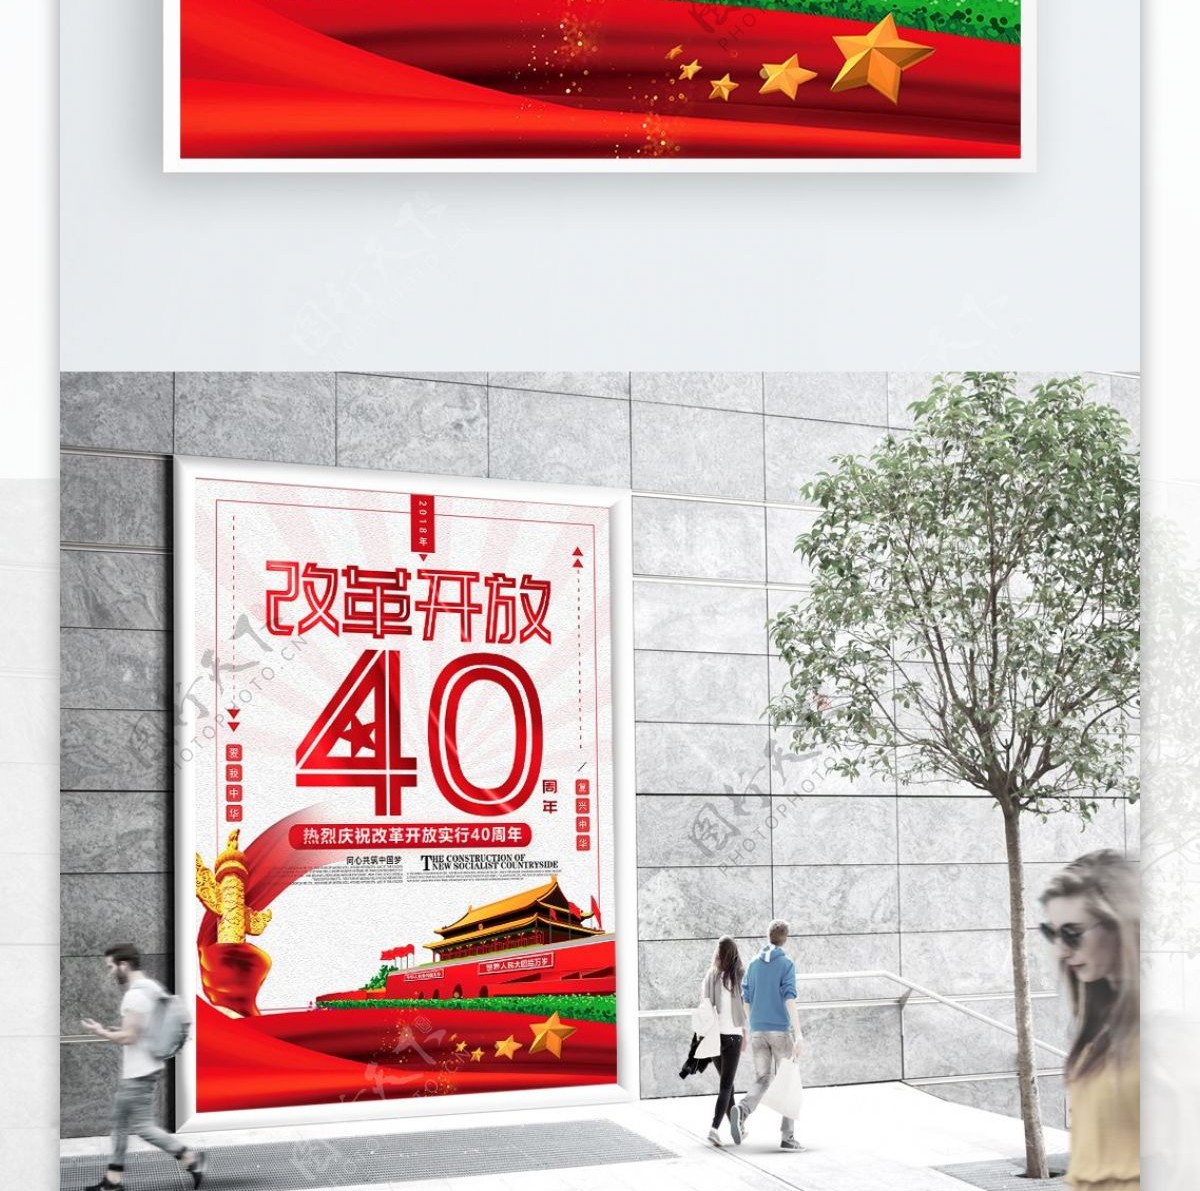 简约改革开放40周年海报设计